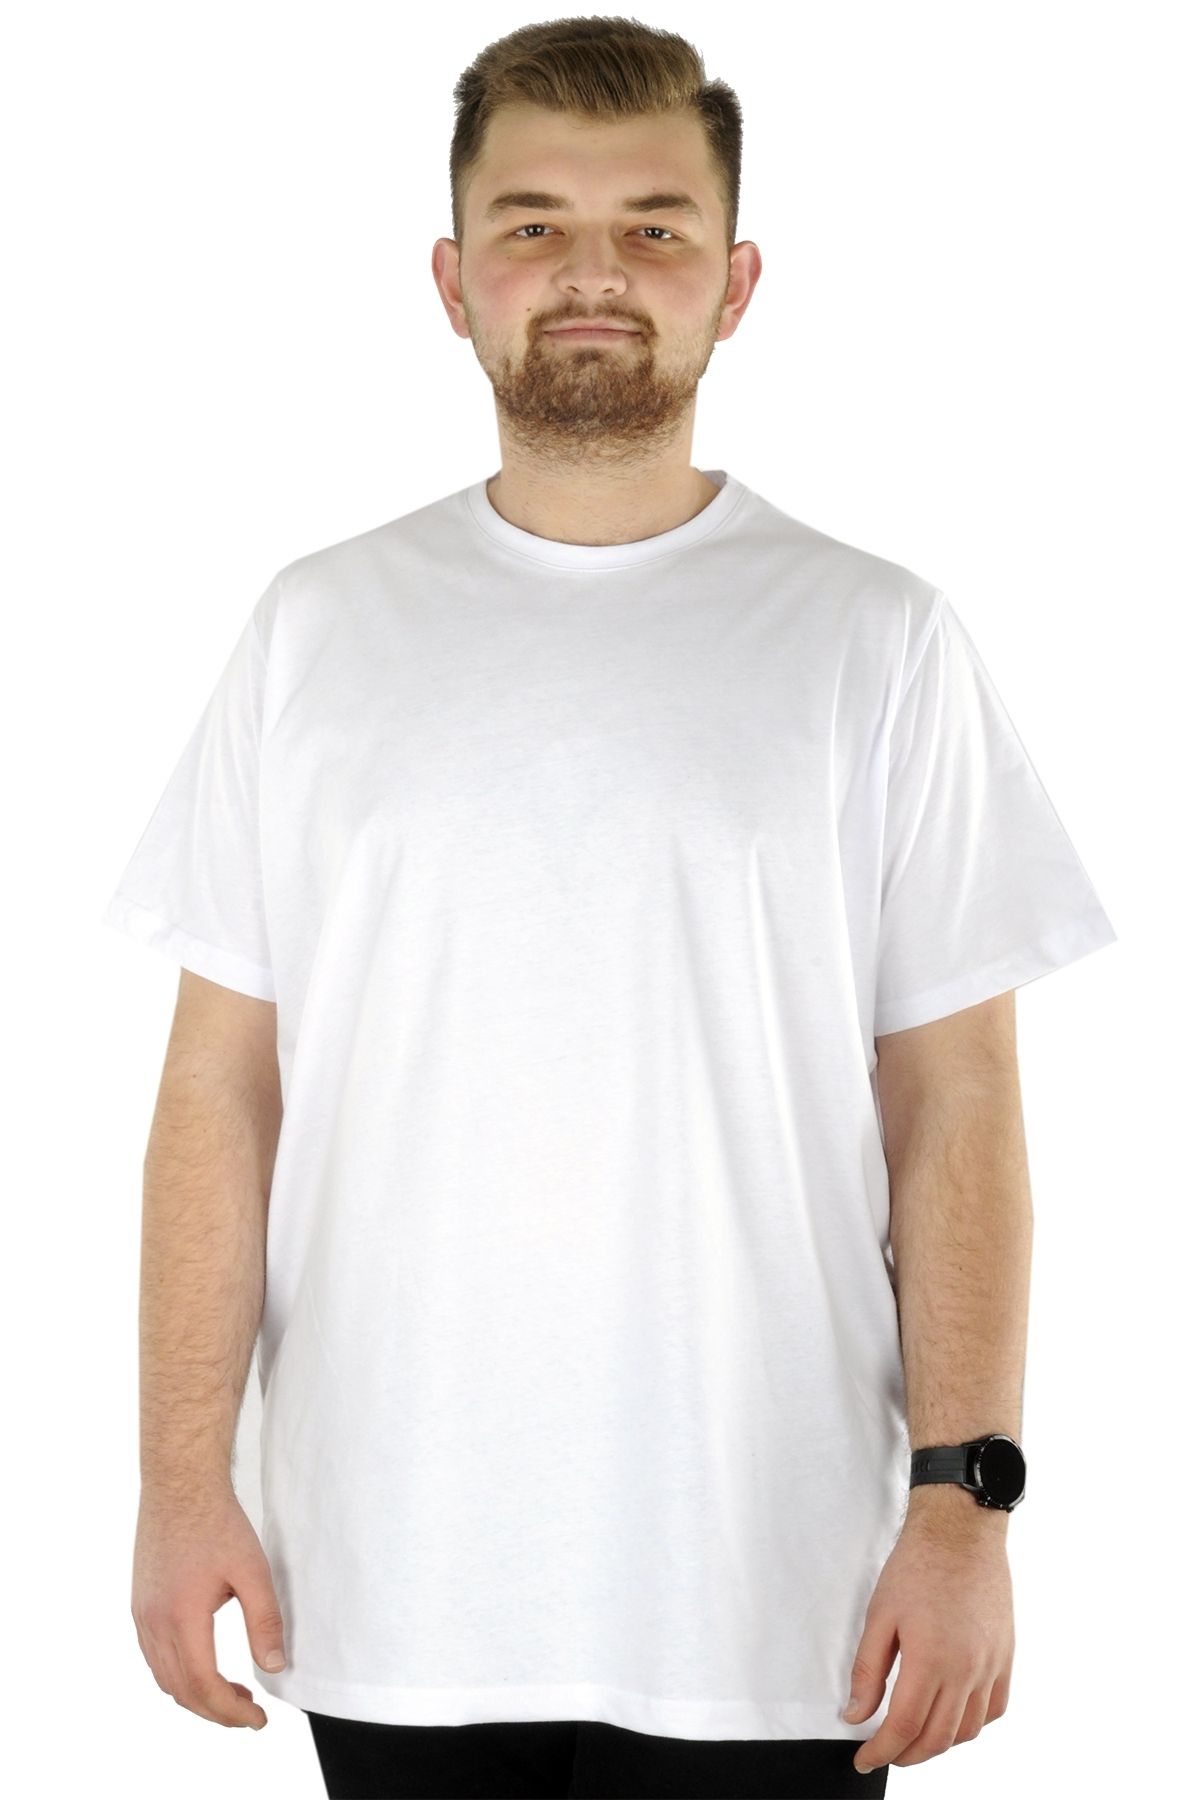 Modexl Mode Xl Büyük Beden Erkek T-shirt Basic 20031 Beyaz